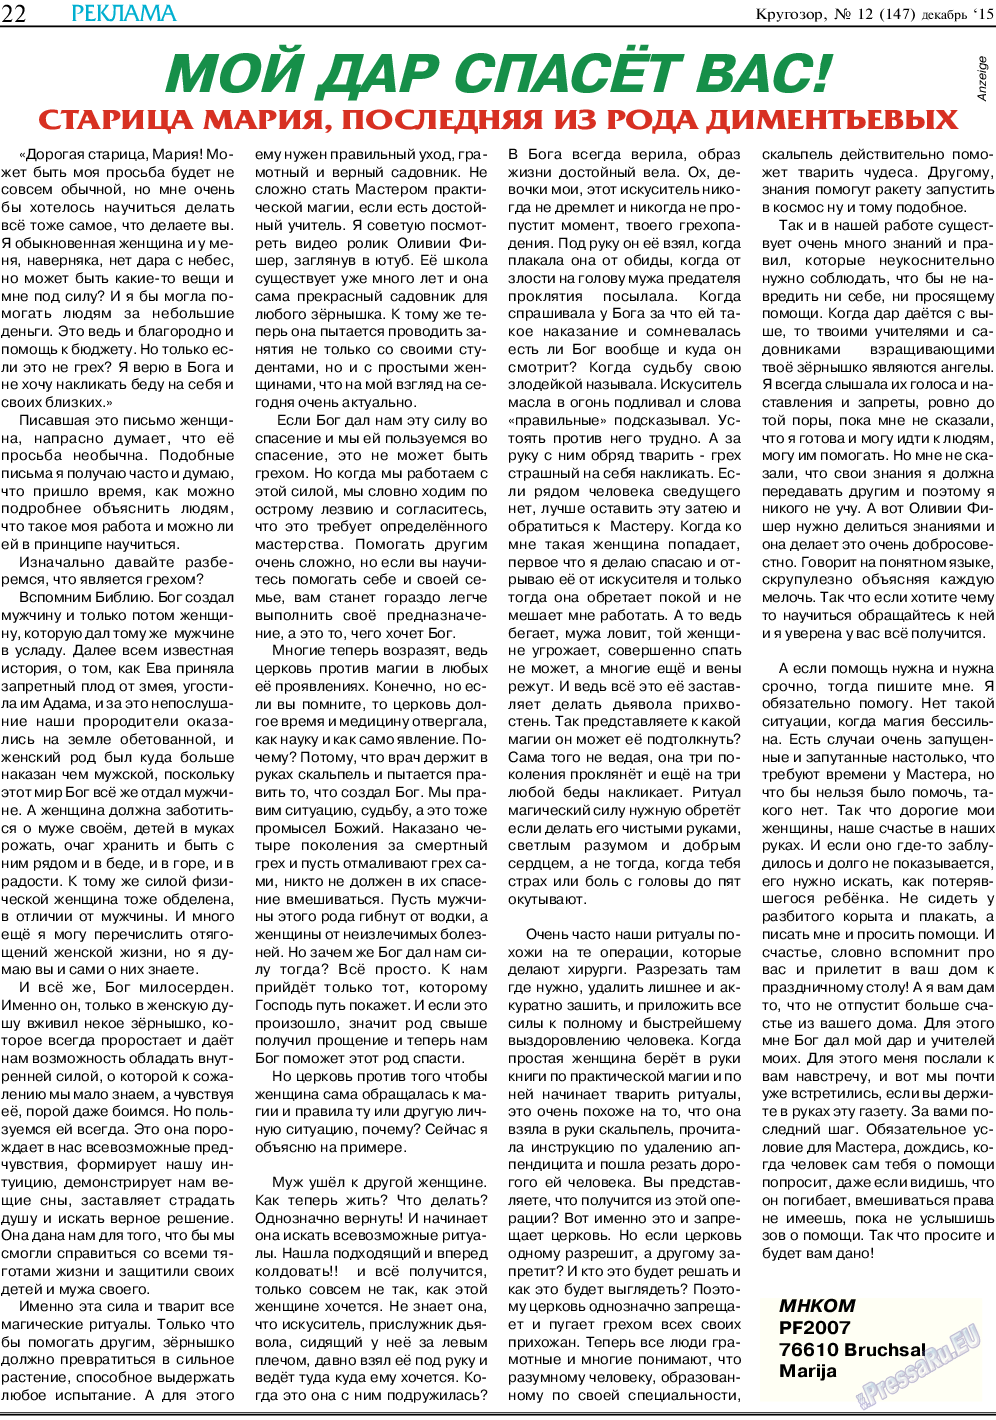 Кругозор (газета). 2015 год, номер 12, стр. 22